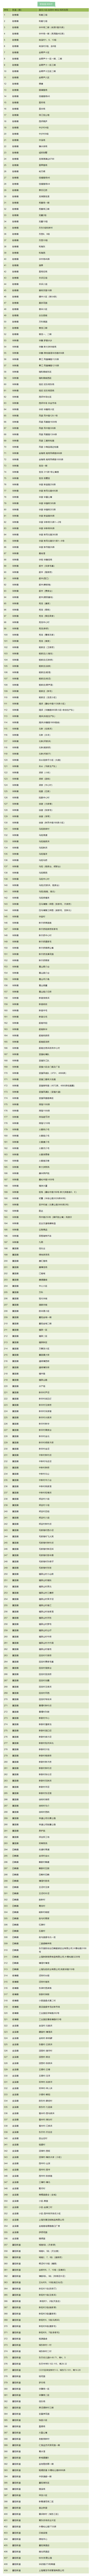 上海市青浦区第一批“三区”划分名单公布